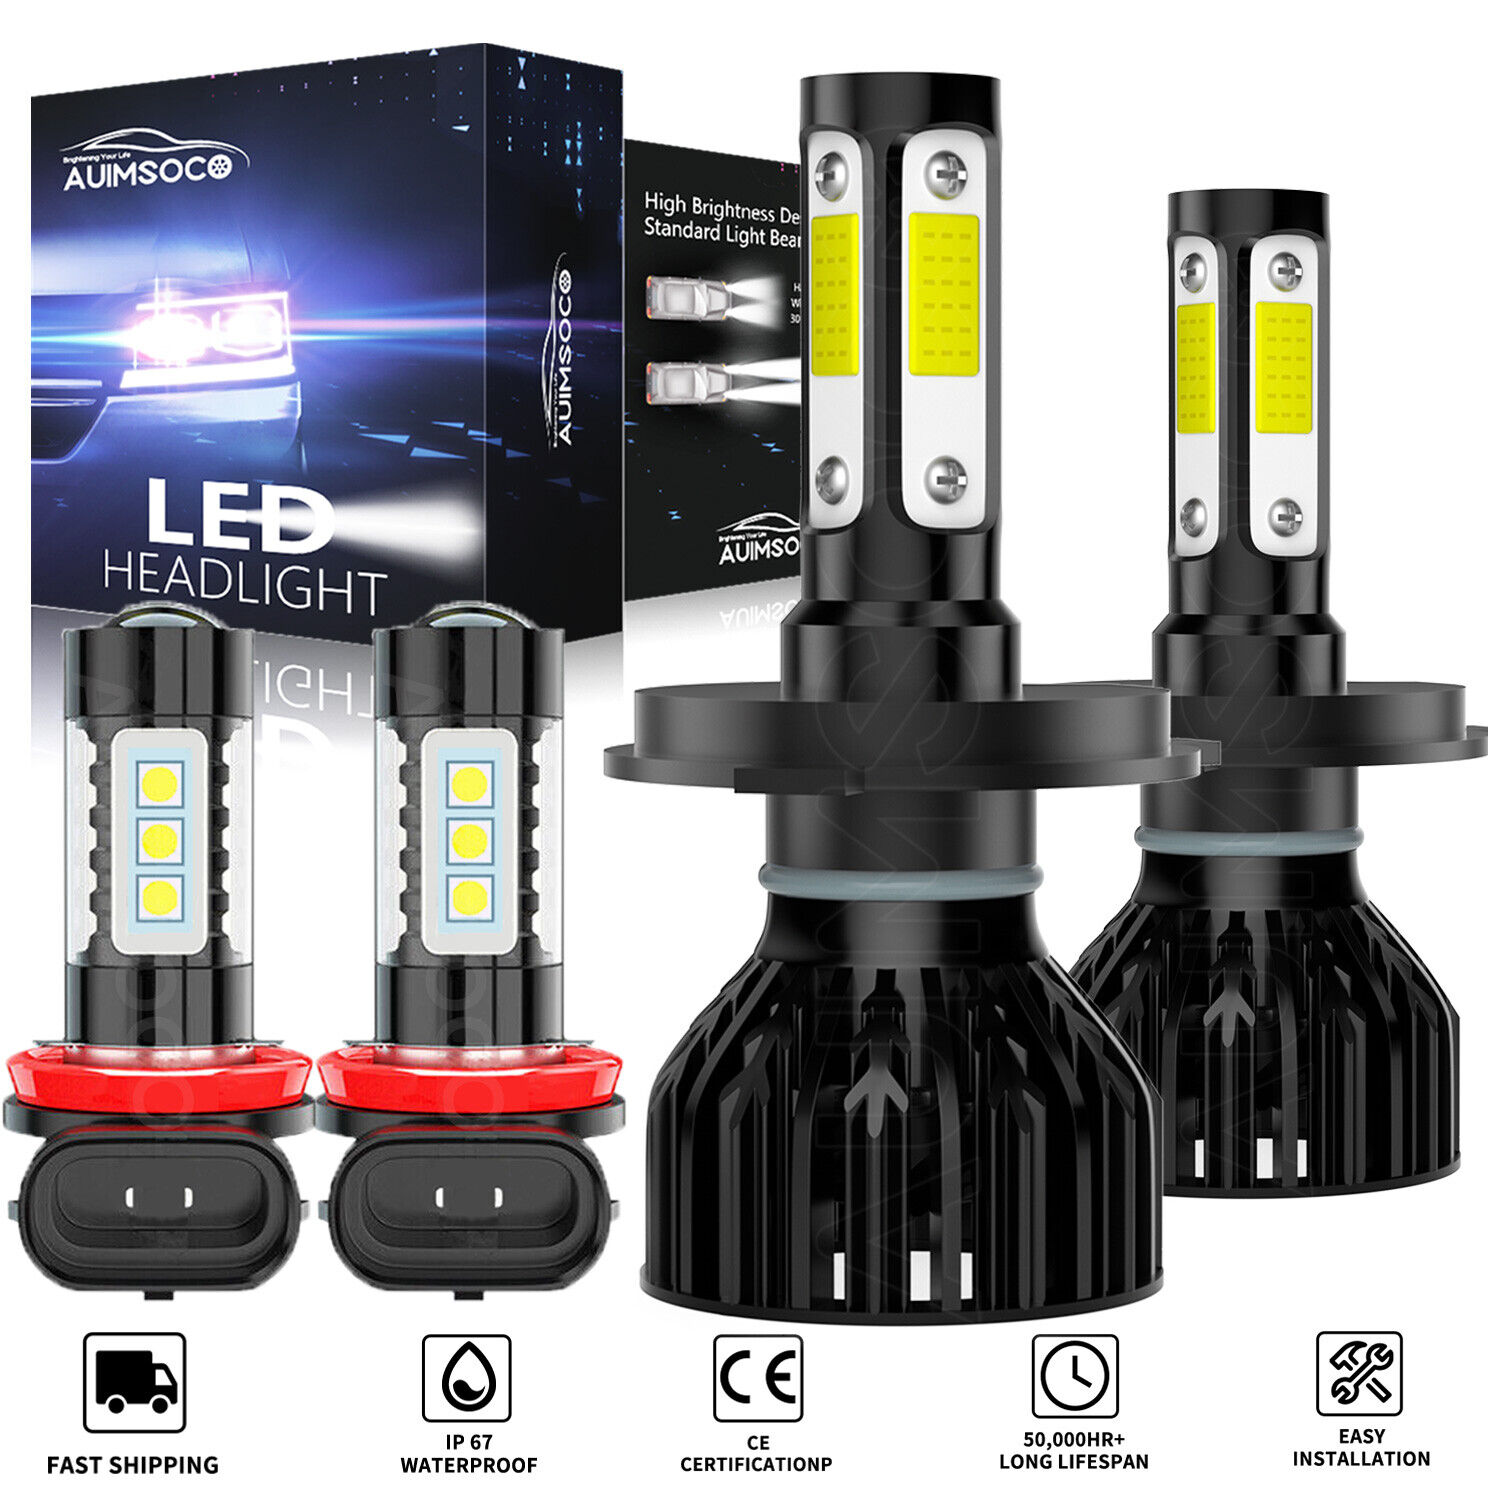 4x 6000K LED Headlight Hi-Low Beam Fog Light Bulbs For Honda Ridgeline 2006-2014